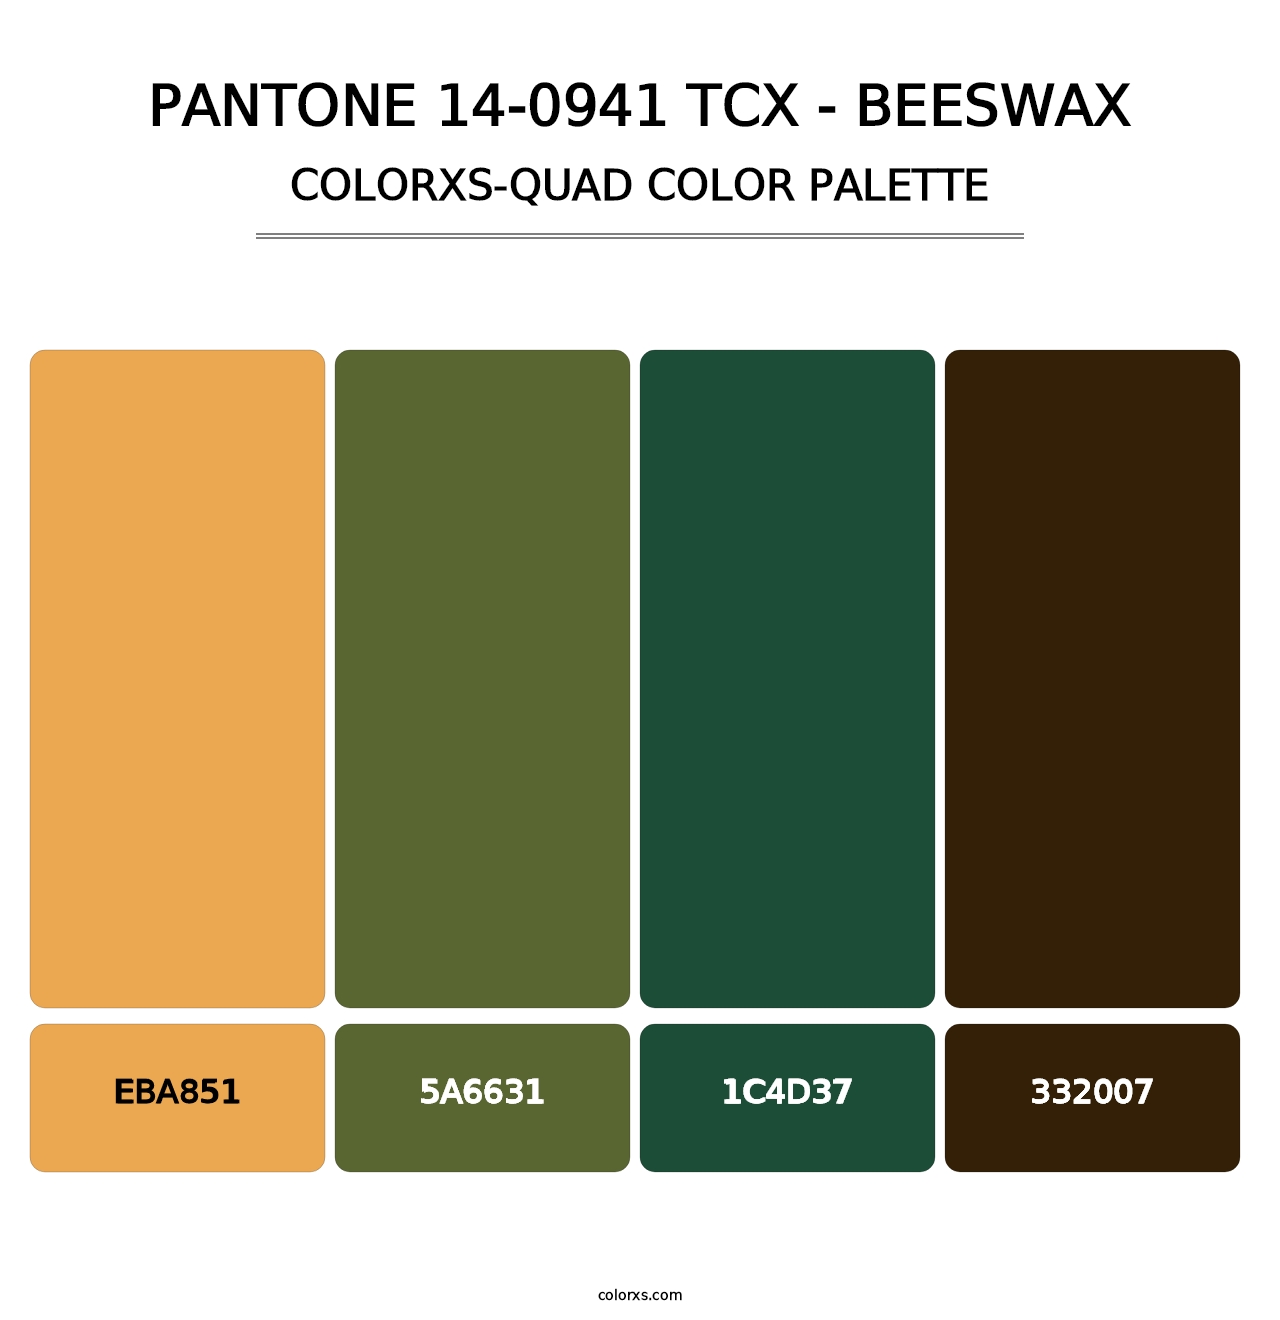 PANTONE 14-0941 TCX - Beeswax - Colorxs Quad Palette